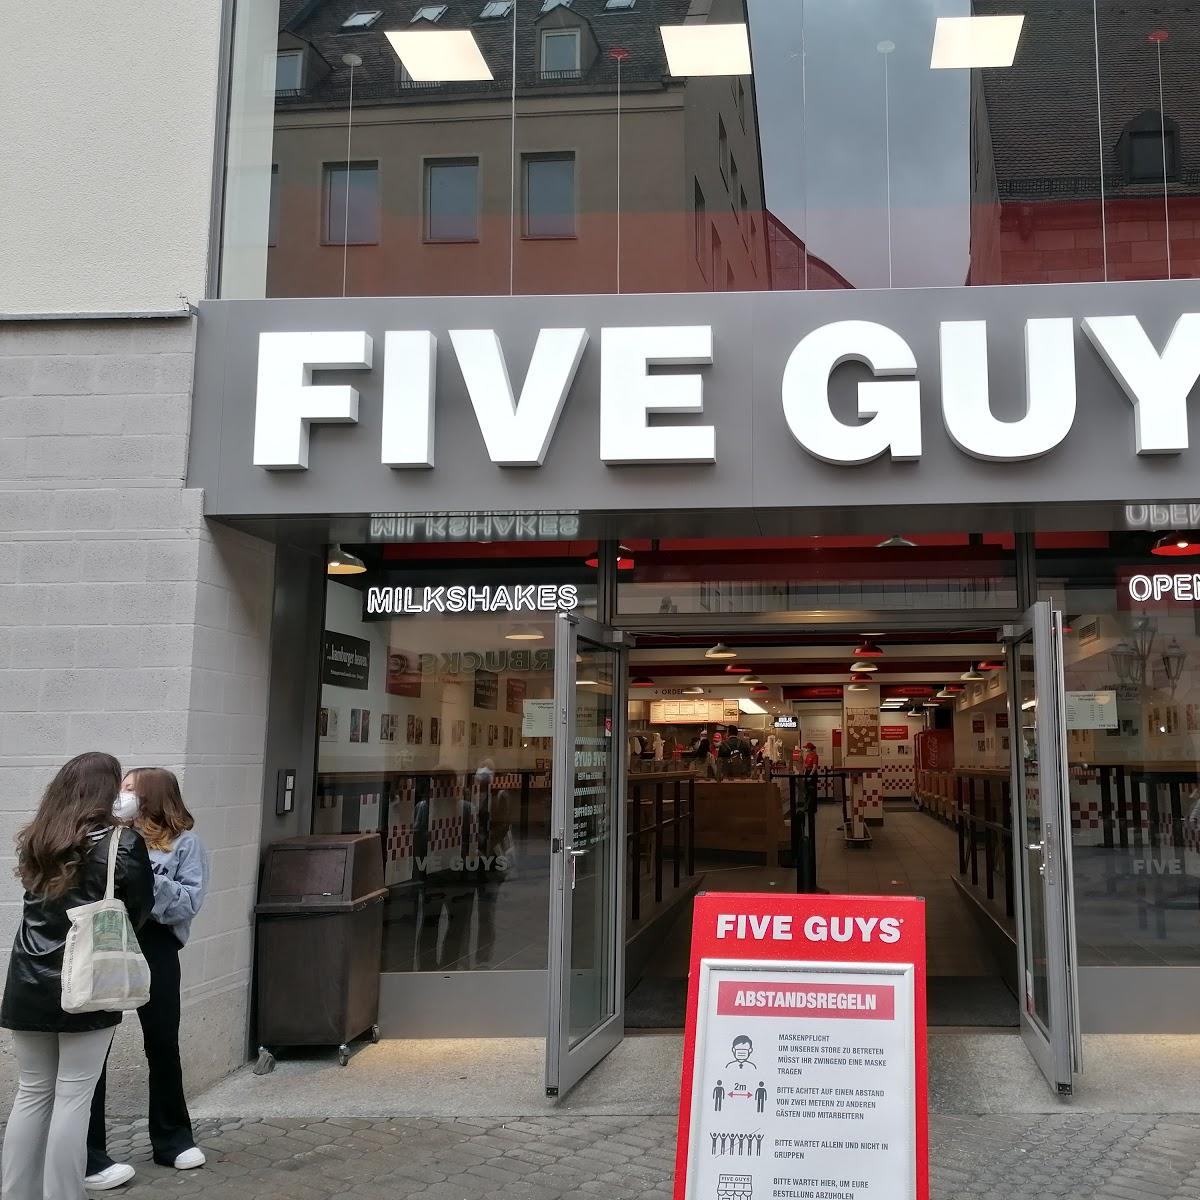 Restaurant "Five Guys" in Nürnberg